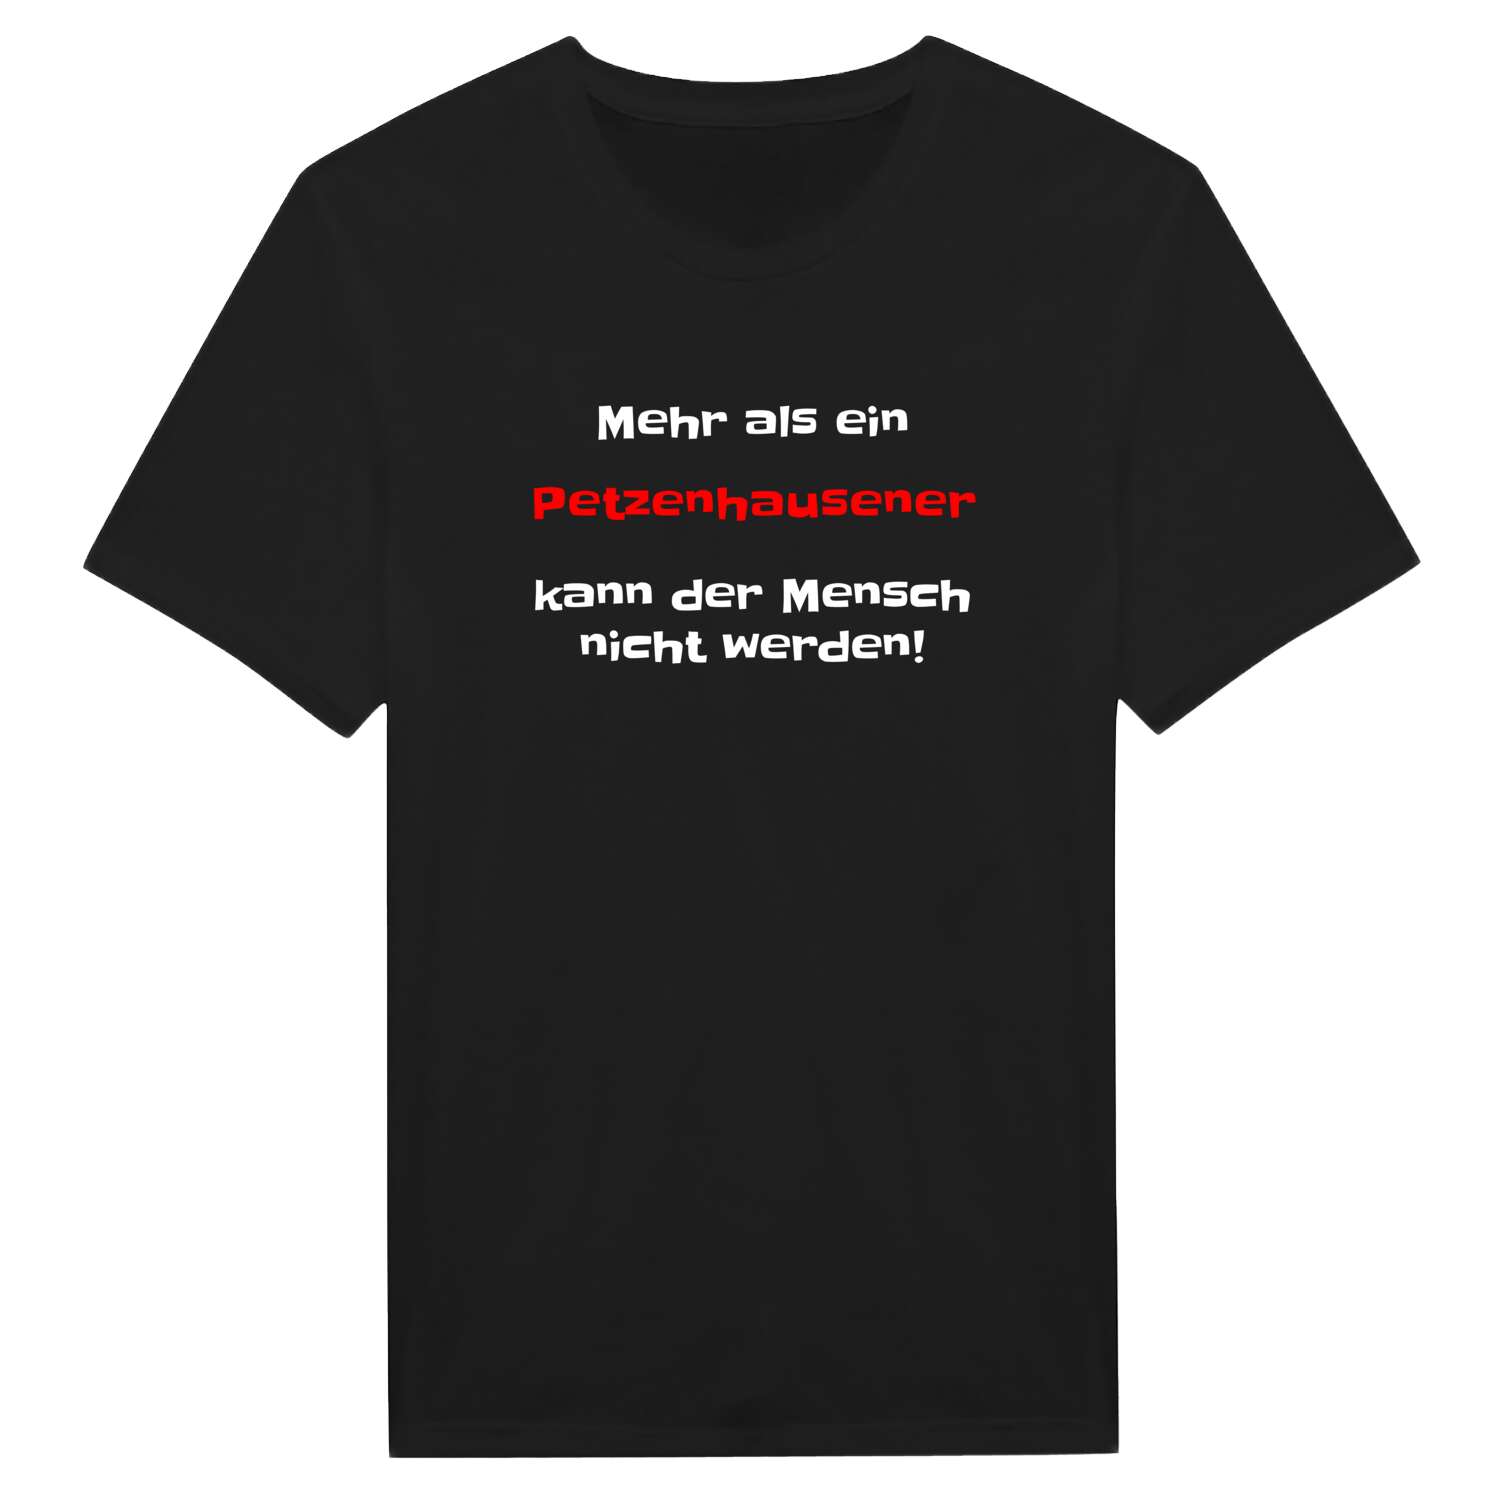 Petzenhausen T-Shirt »Mehr als ein«